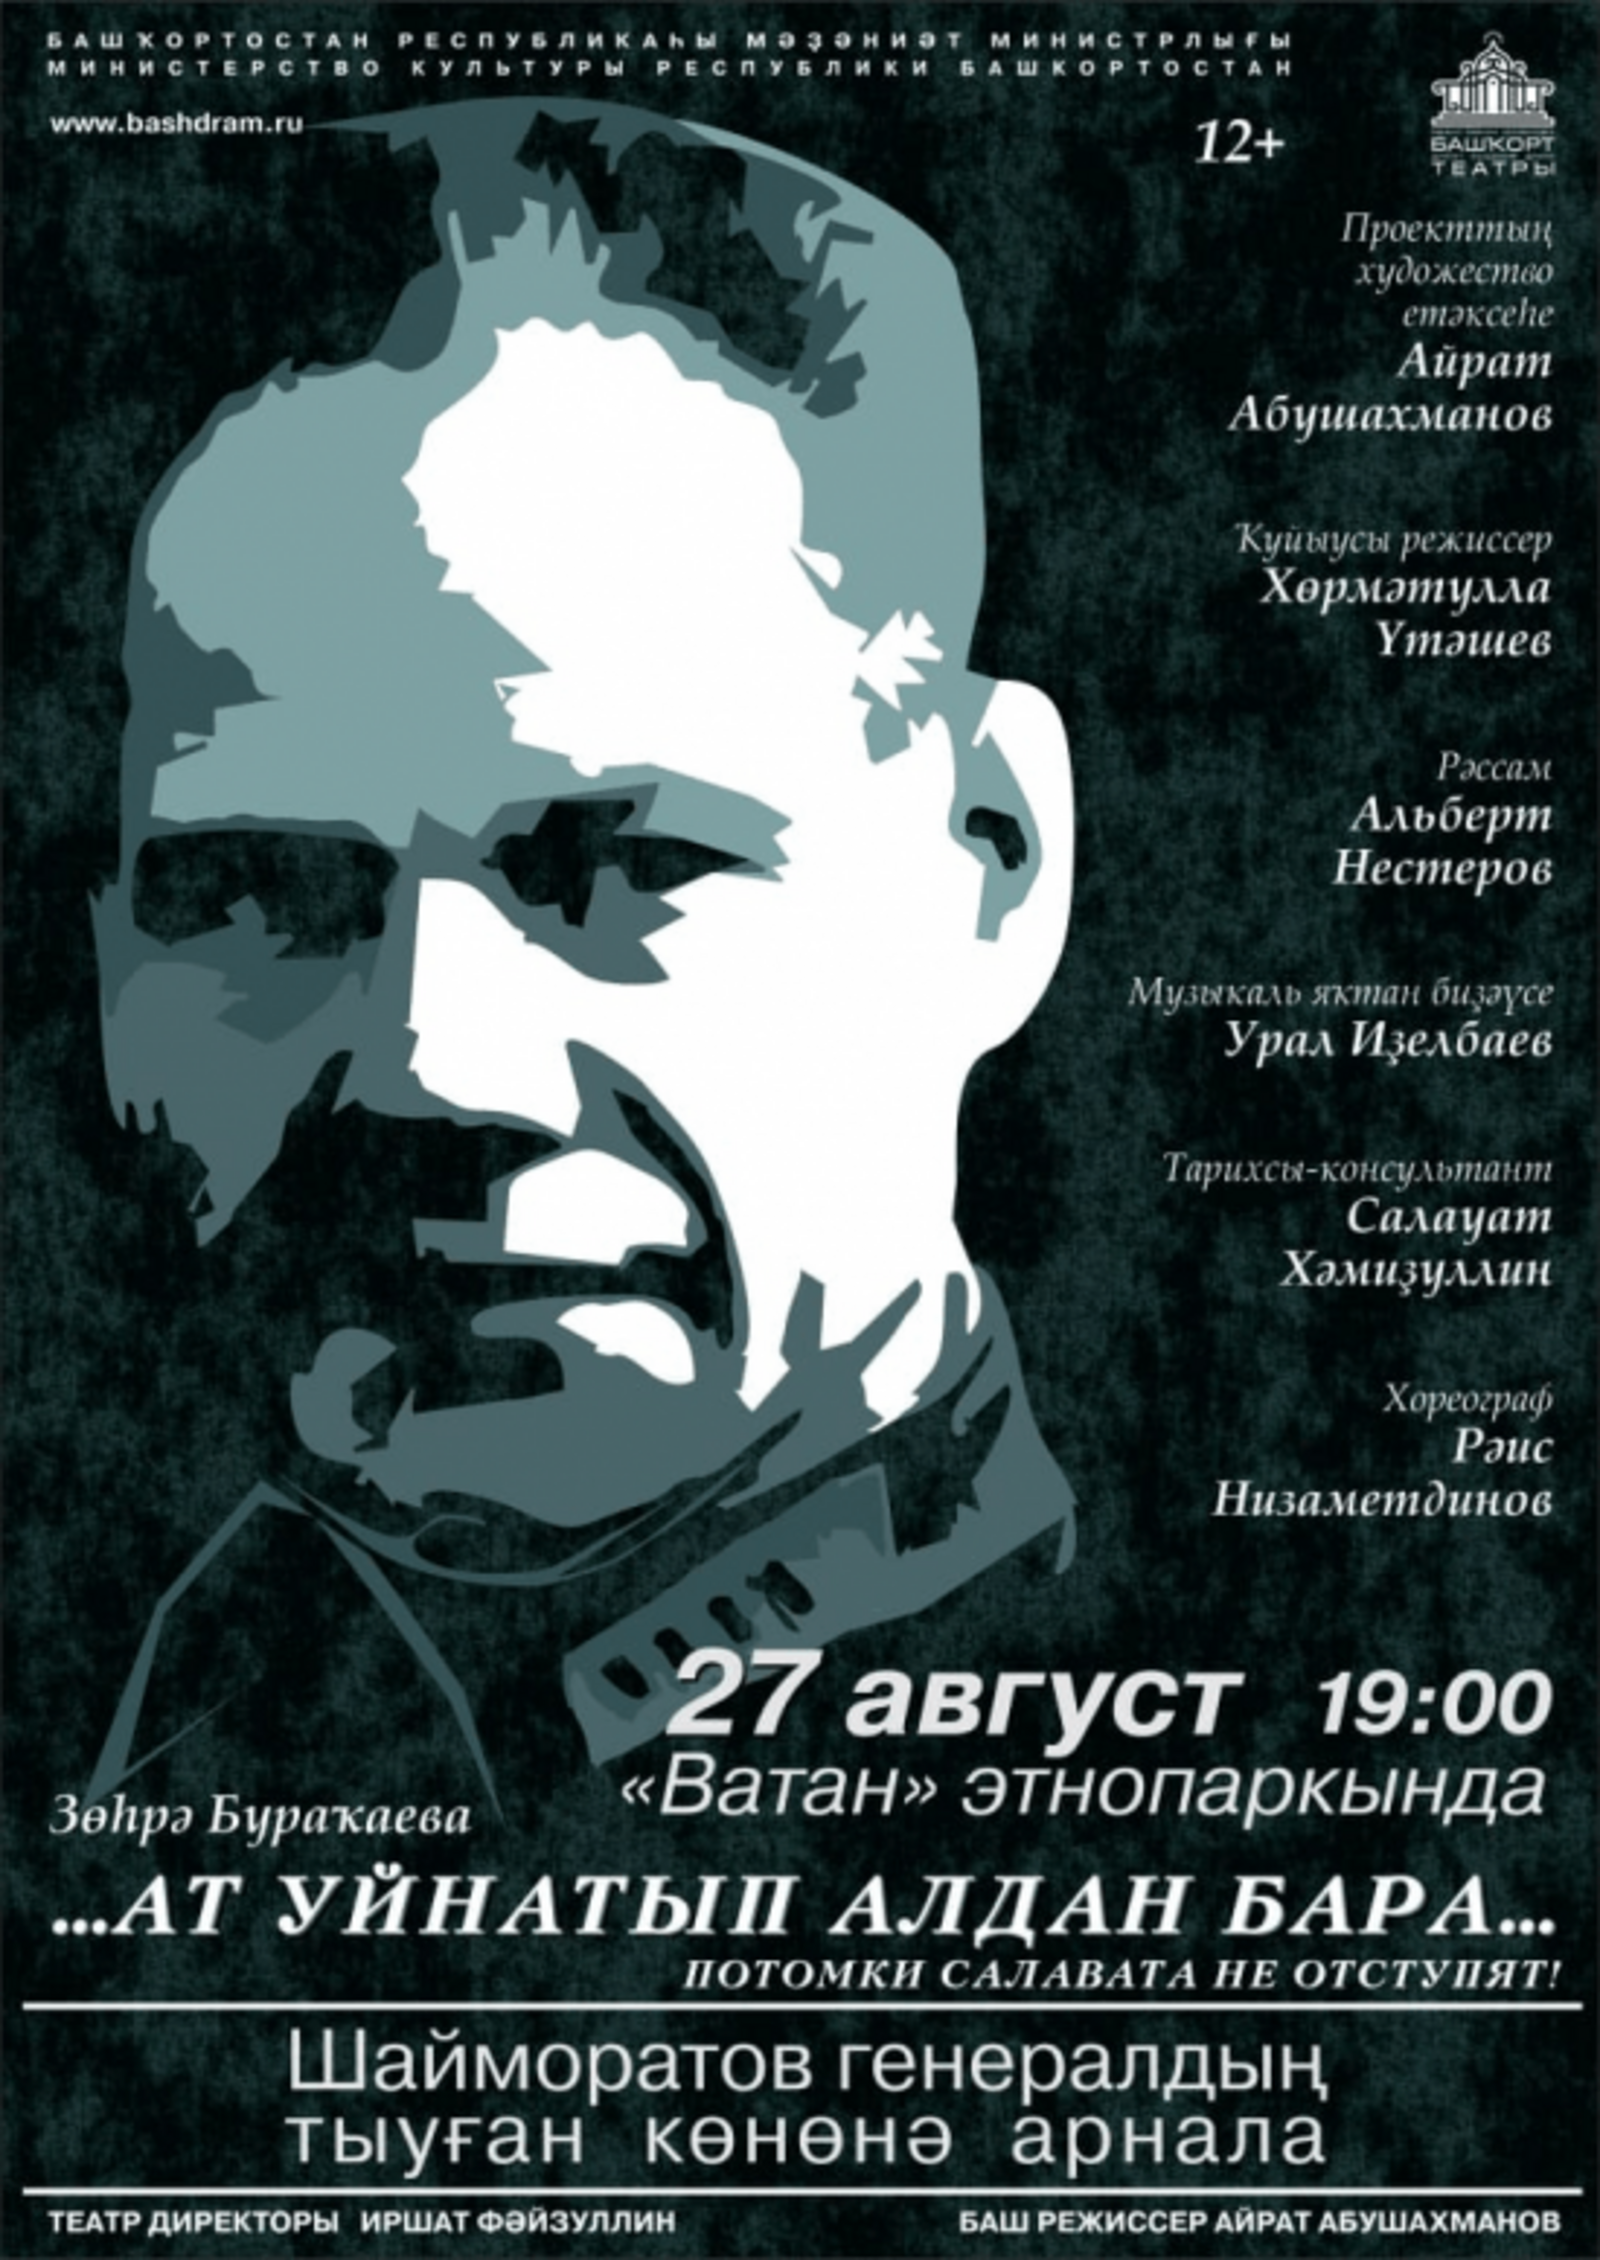 В уфимском амфитеатре состоится показ спектакля, посвященного памяти генерала Шаймуратова